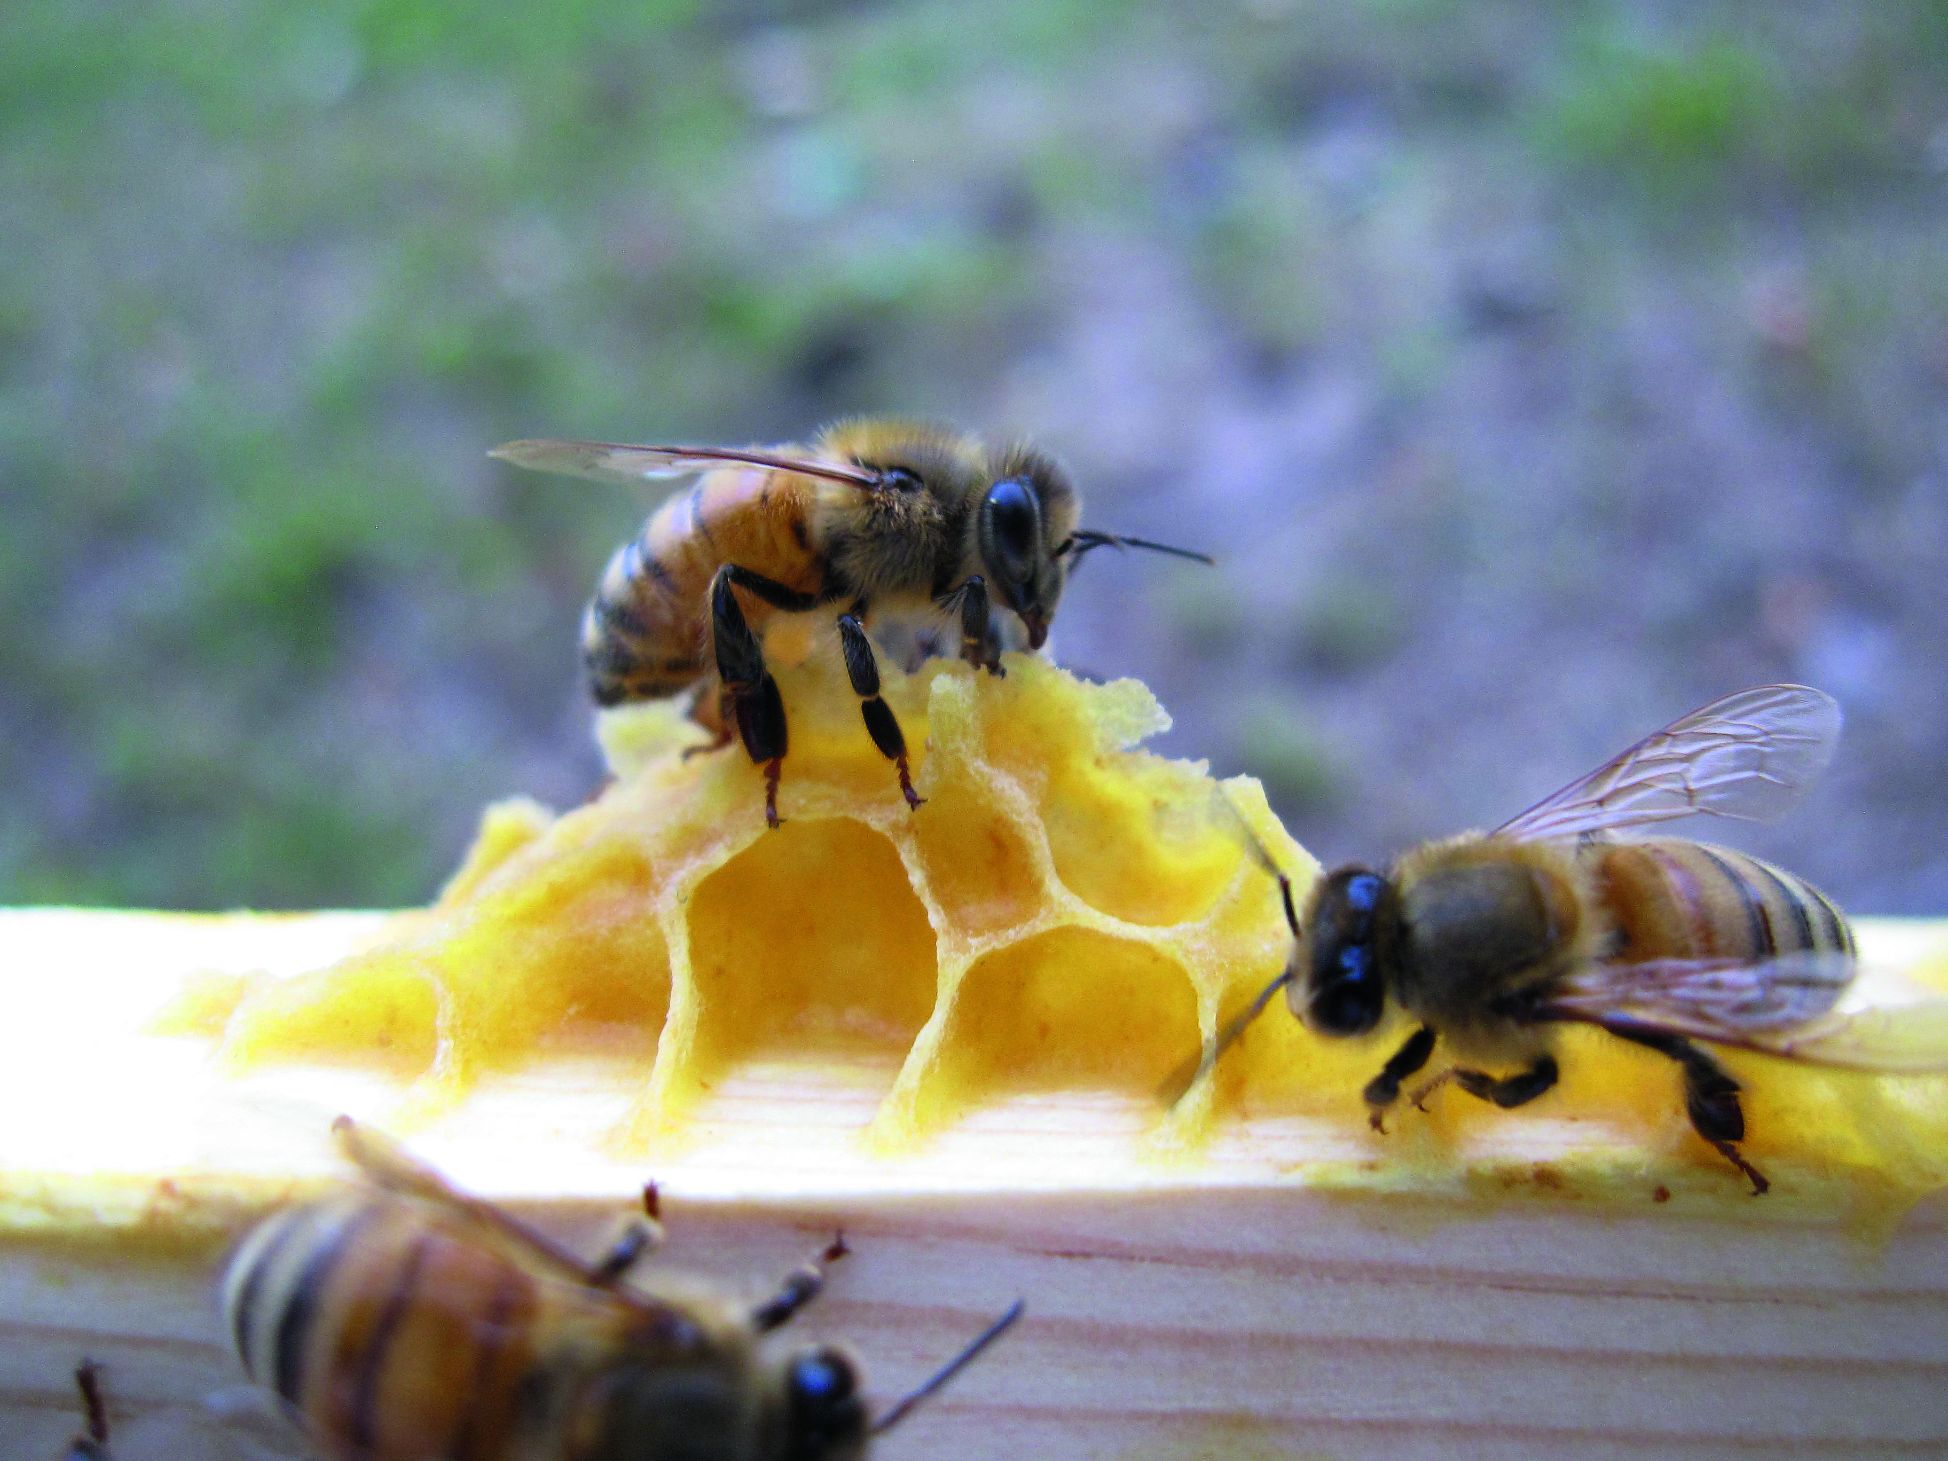 vosak u košnici pčelinji vosak